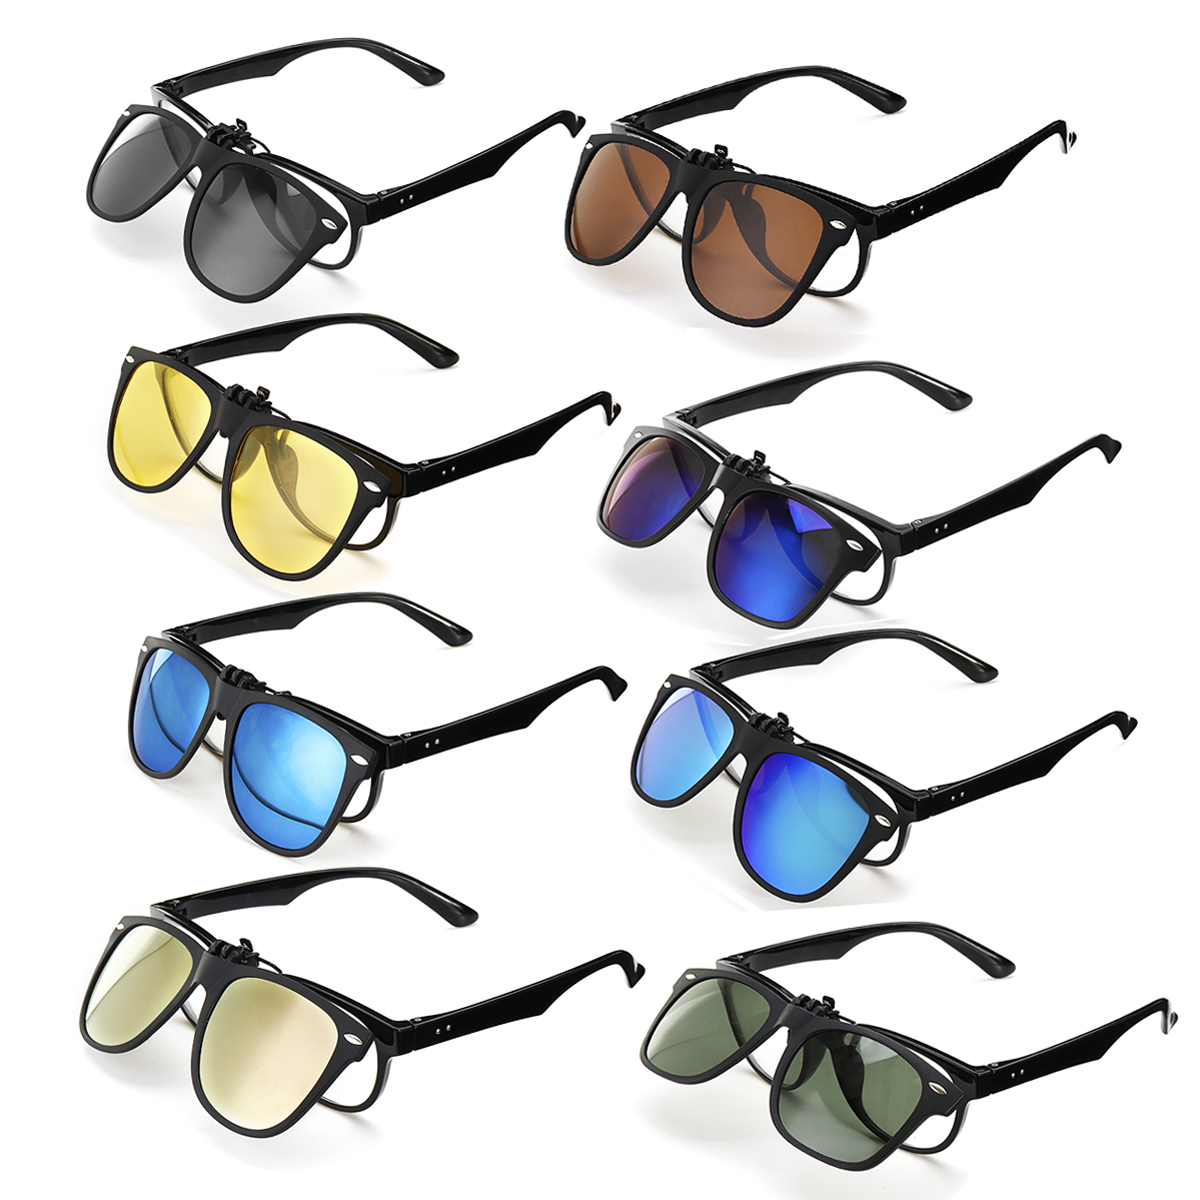 

TR90 UV400 Polarized Sunglasses Lense Clips Lenses Glasses